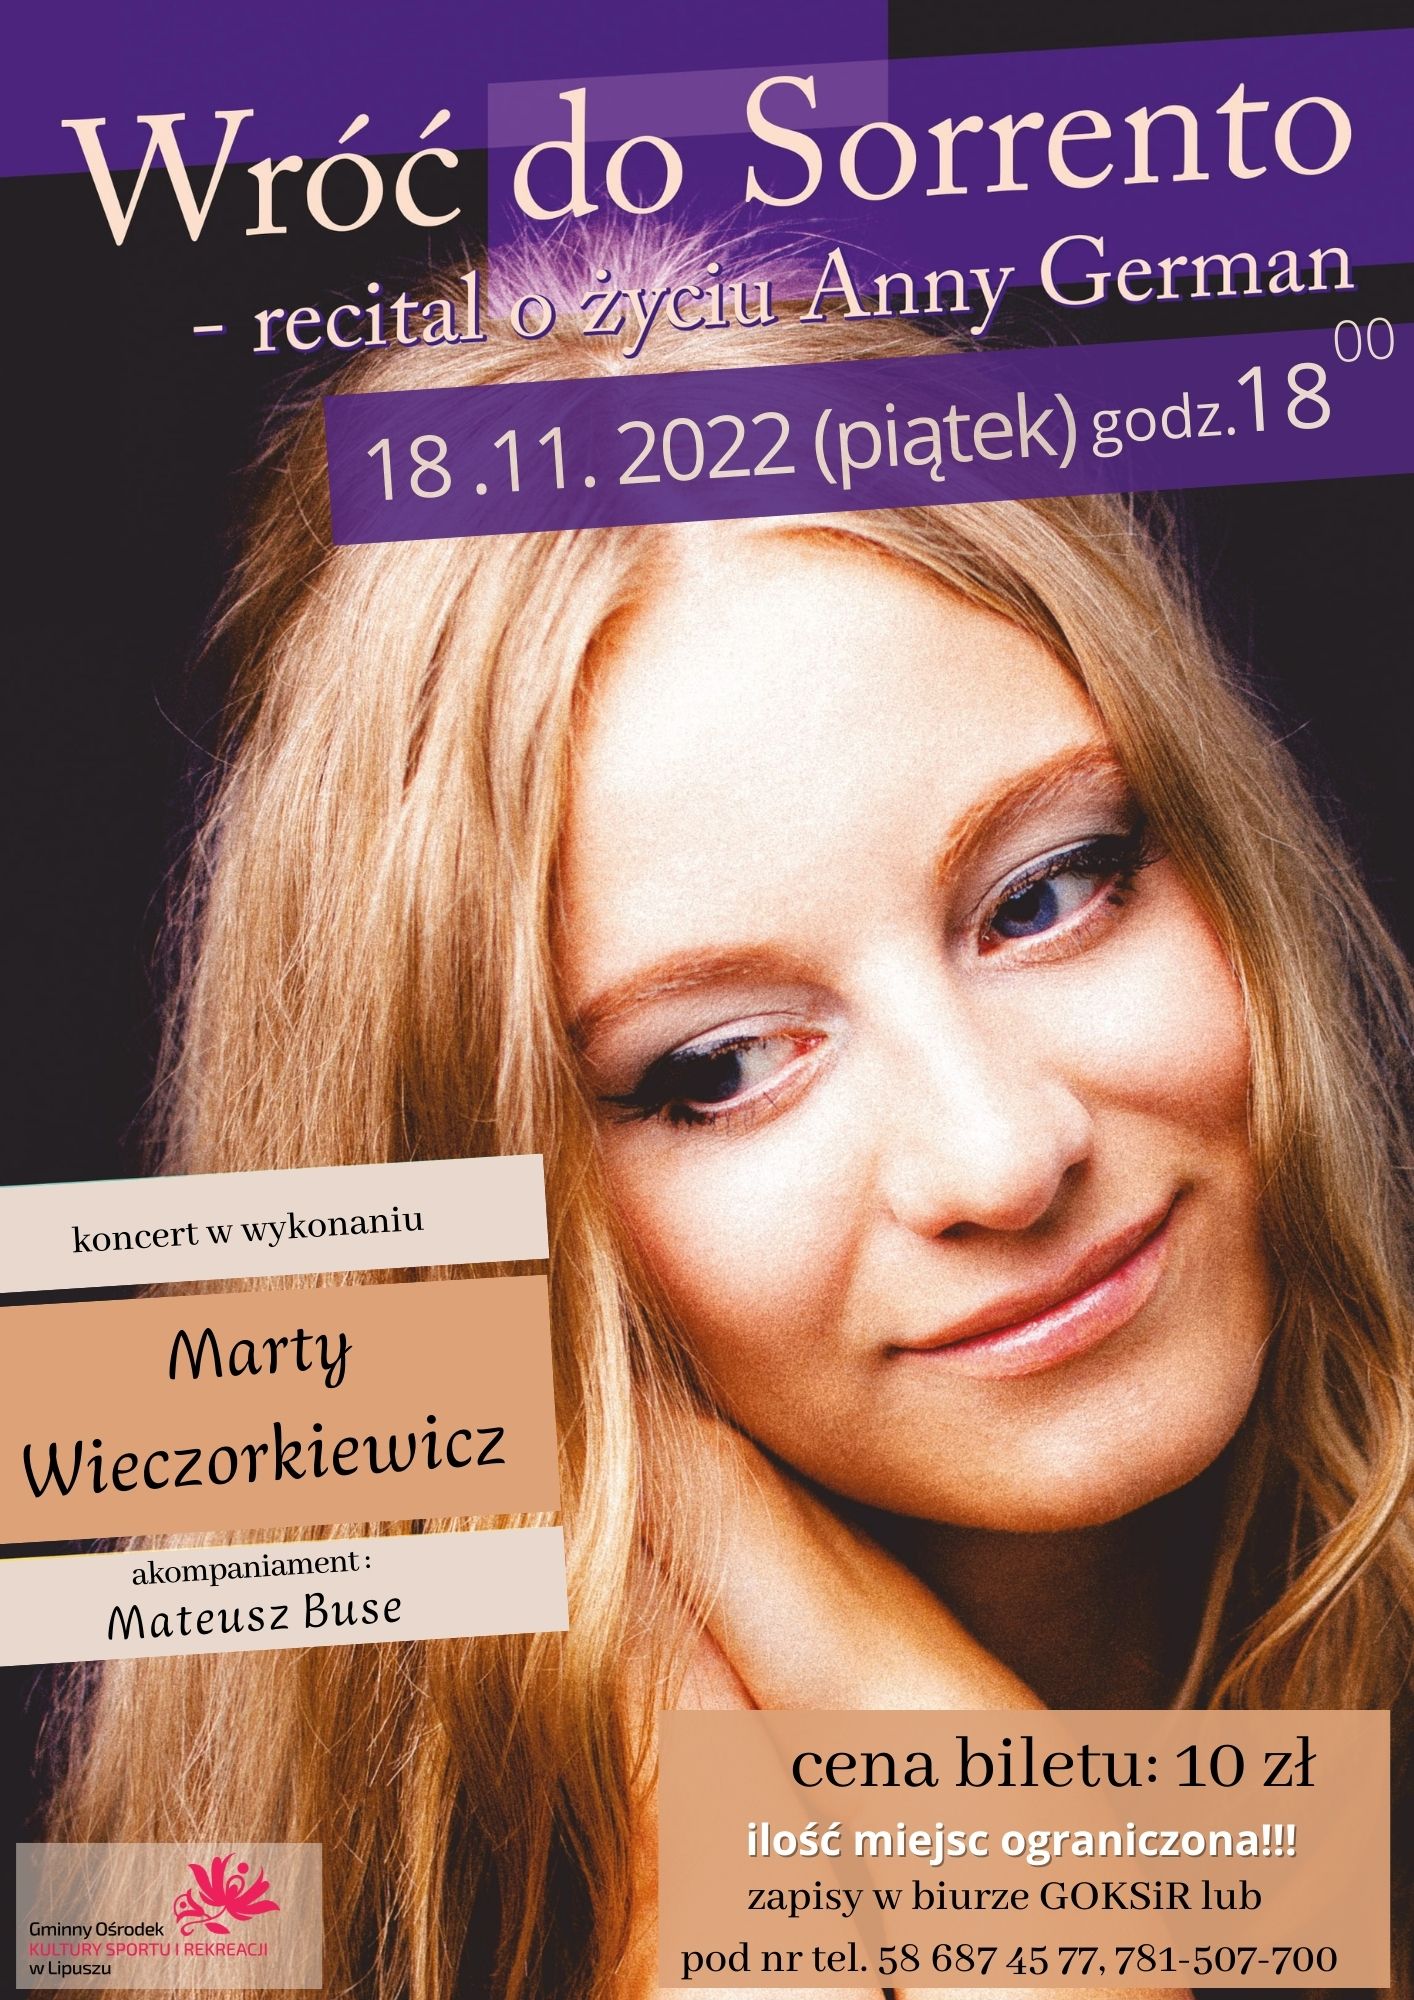 plakat z informacją o recitalu o życiu Anny German - Wróć do Sorrento